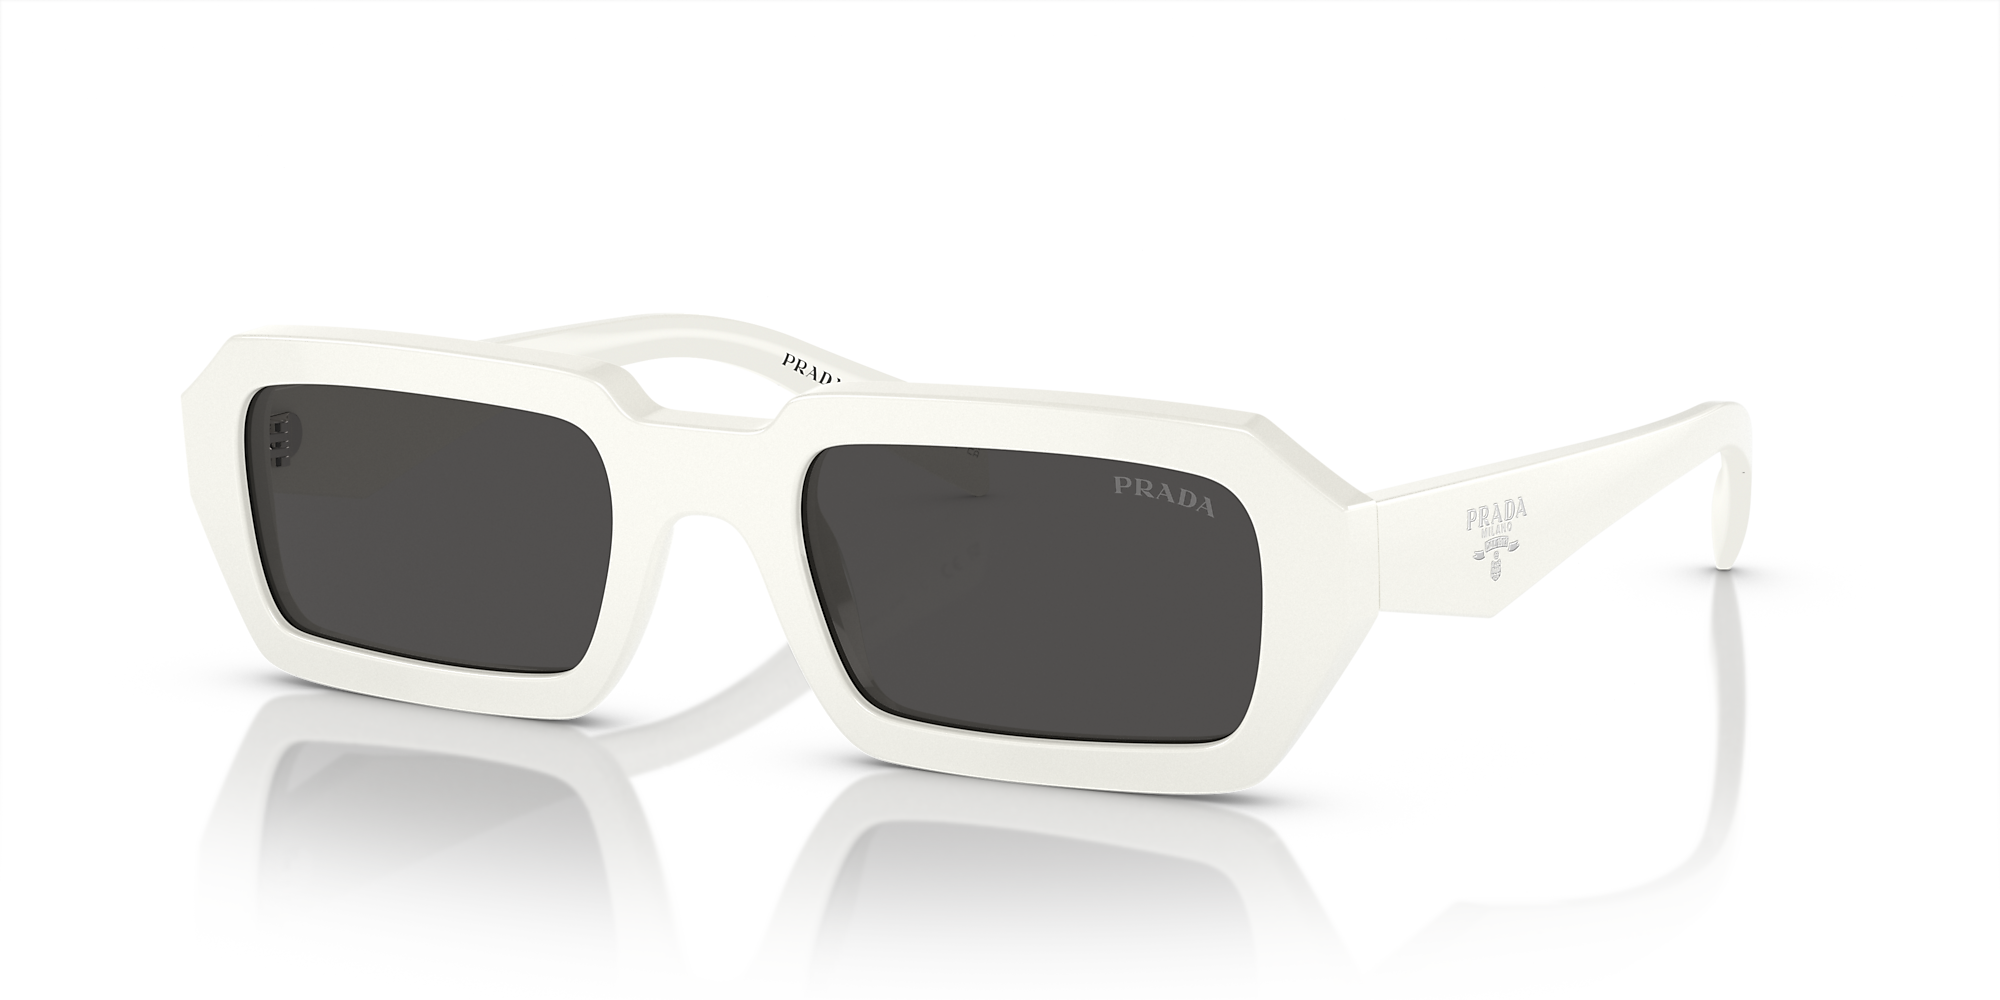 Prada PR A12S 52 Dark Grey & White Sunglasses | Sunglass Hut USA